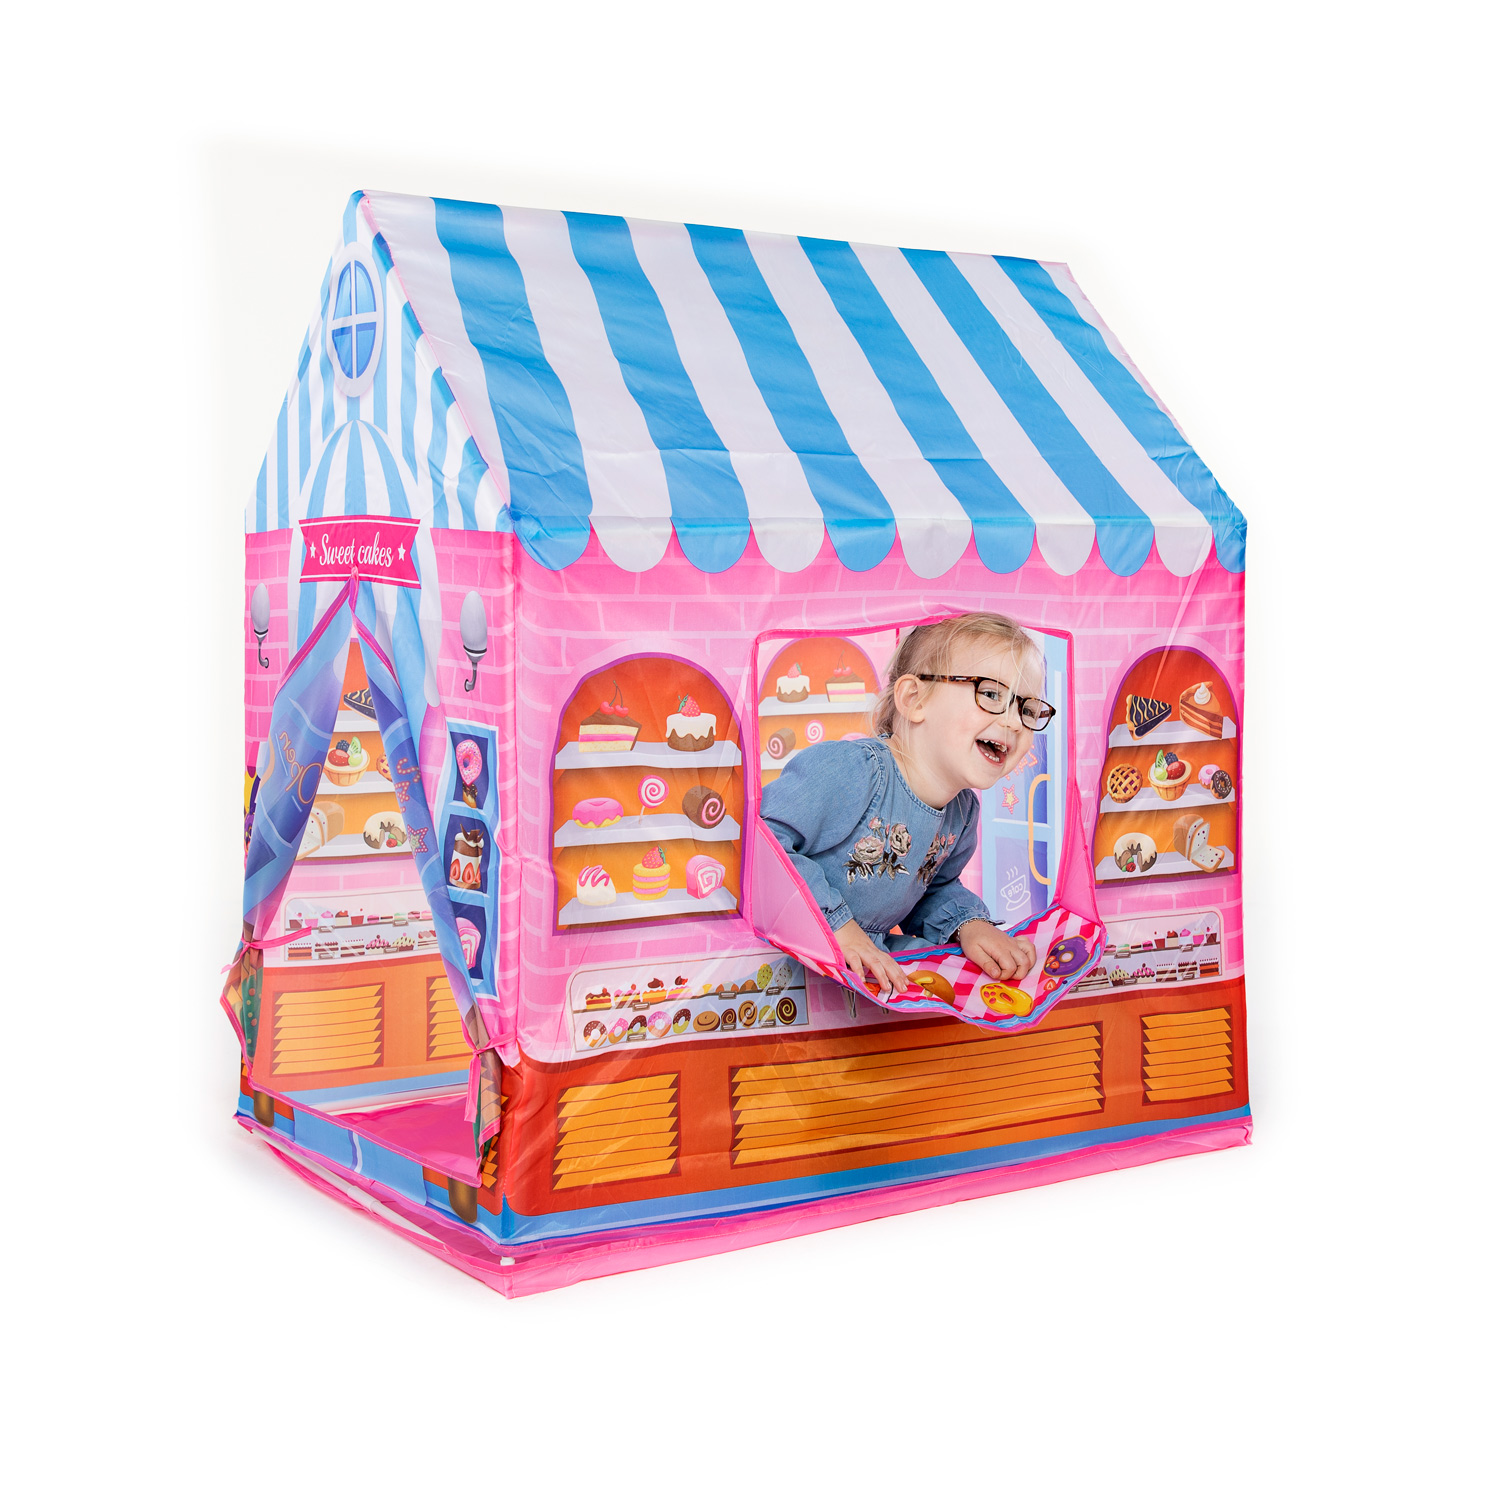 Verwant Tien jaar aangenaam Play tent Cake shop | Thimble Toys